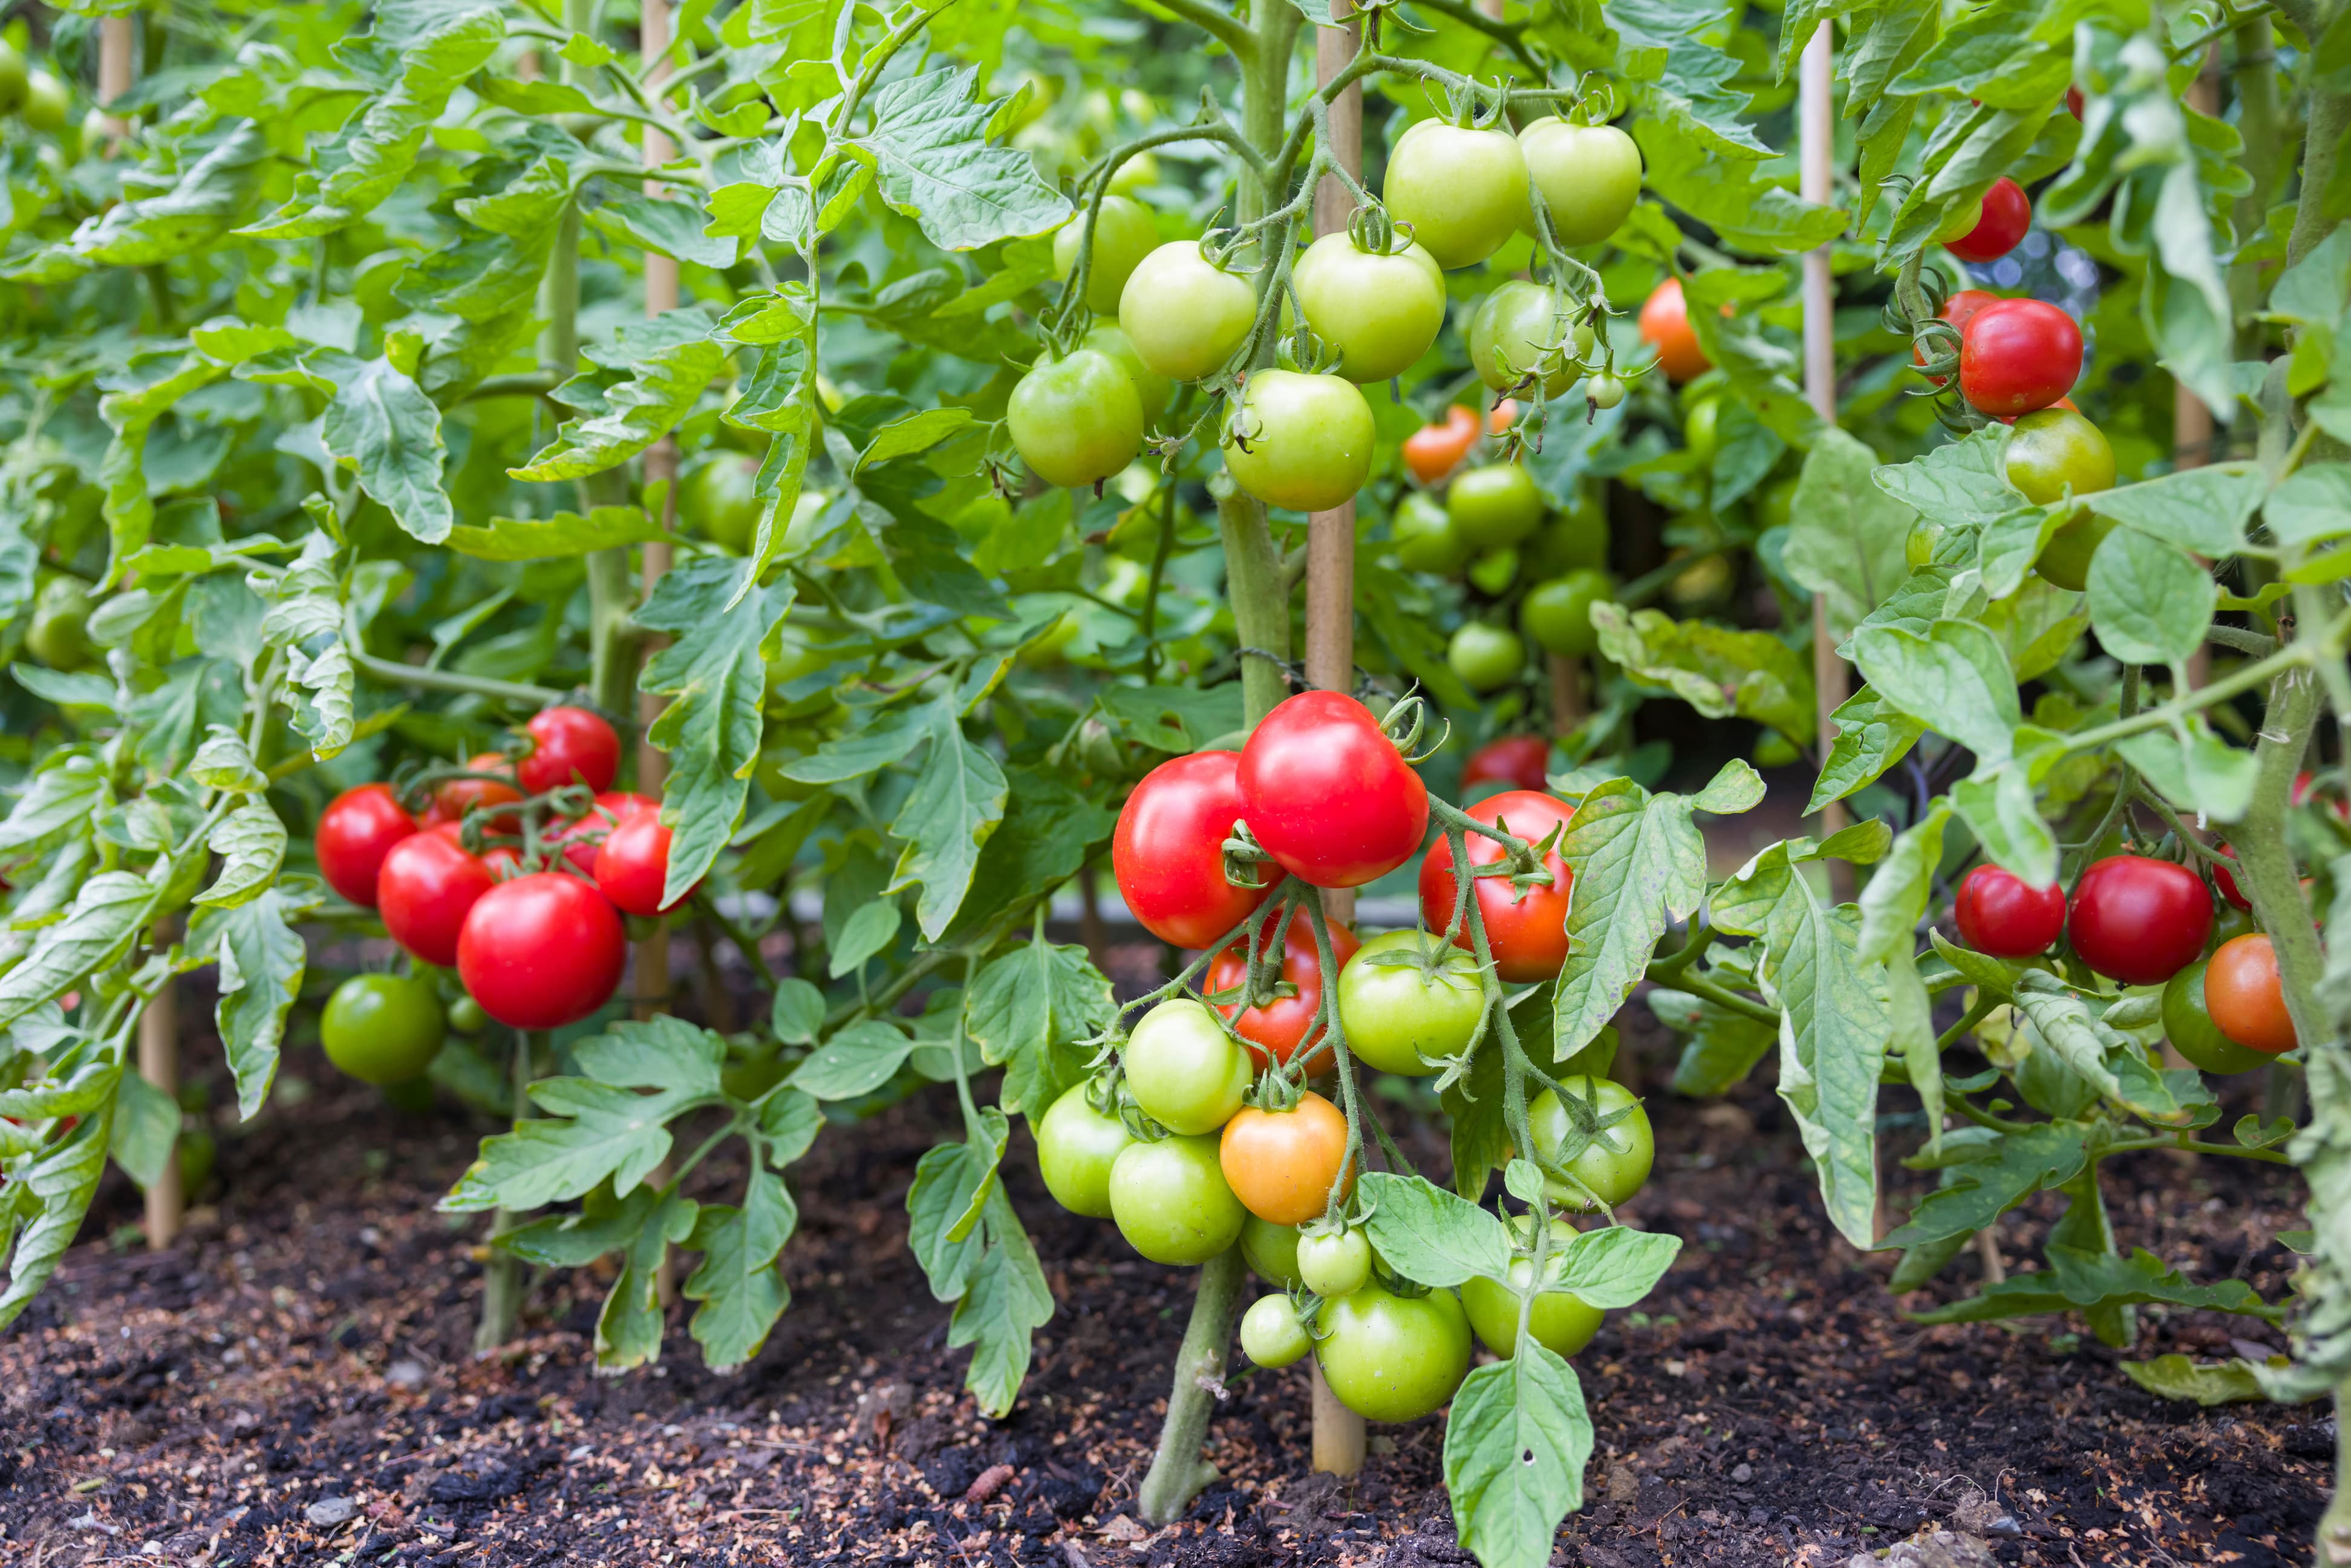 mit diesem trick kannst du abgeknickte tomatenpflanzen im garten noch retten